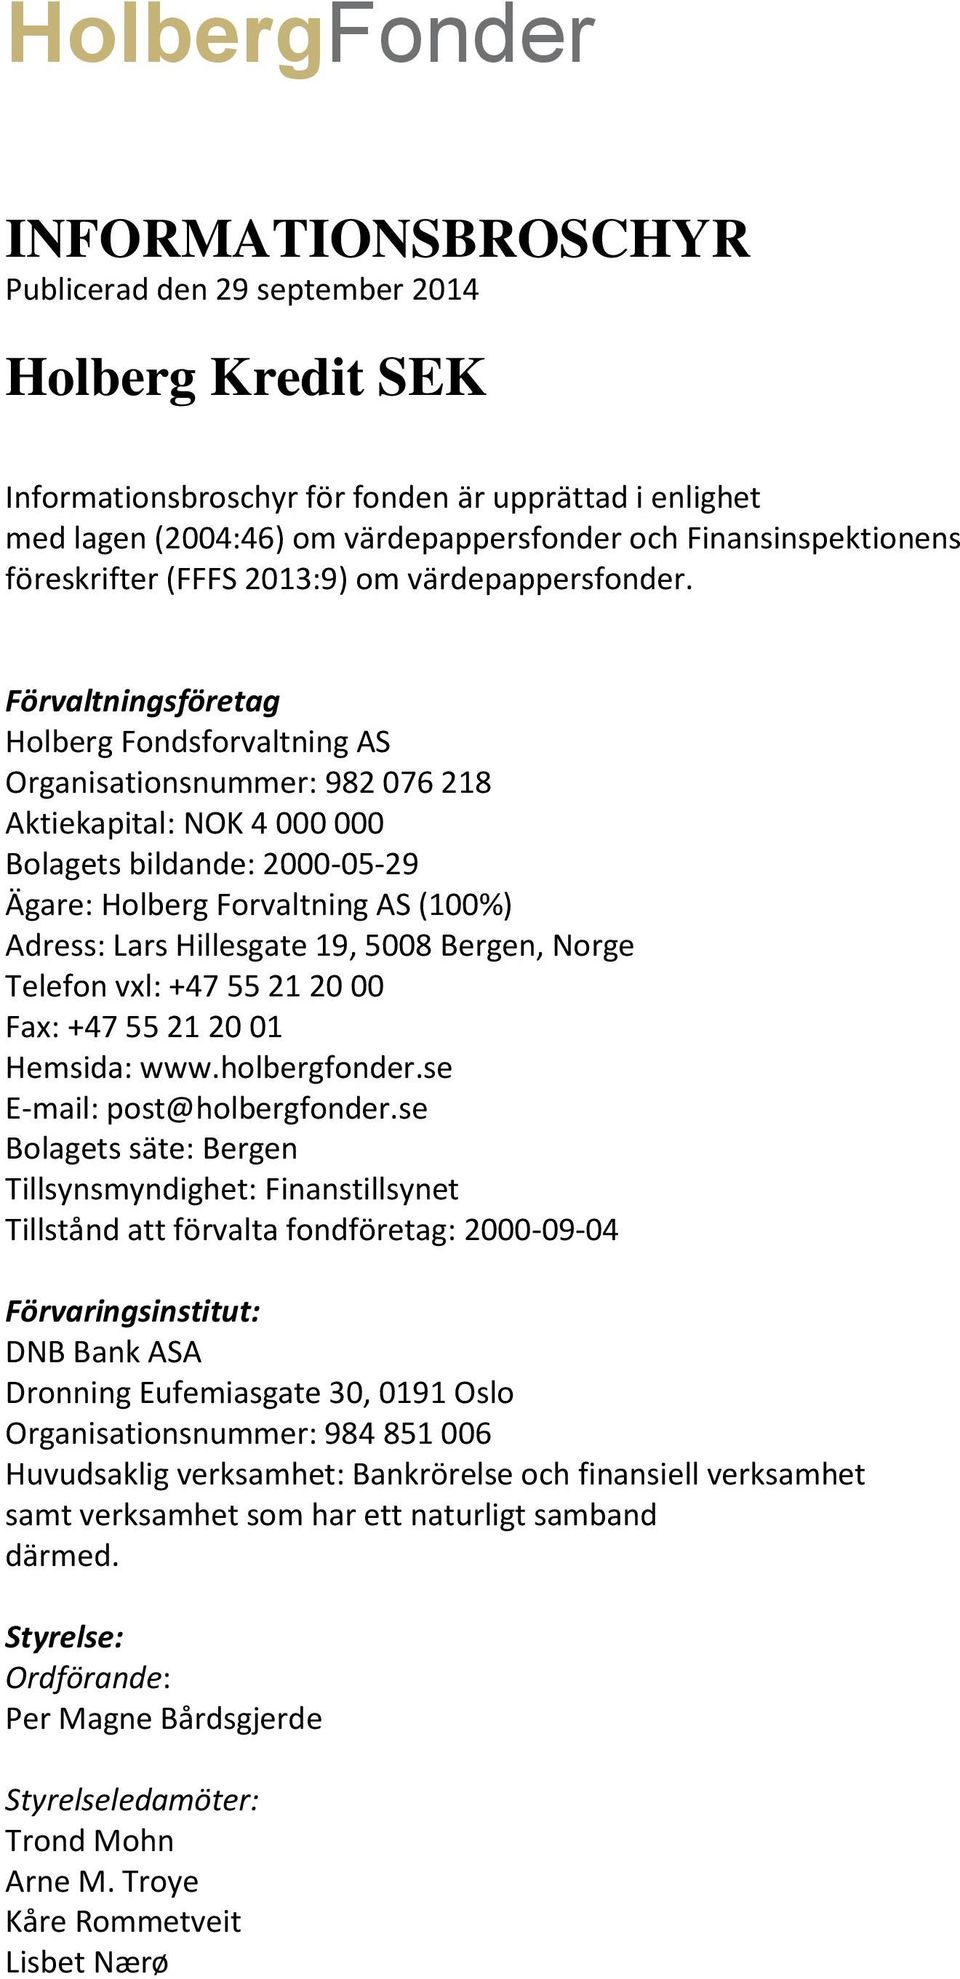 Förvaltningsföretag Holberg Fondsforvaltning AS Organisationsnummer: 982 076 218 Aktiekapital: NOK 4 000 000 Bolagets bildande: 2000-05-29 Ägare: Holberg Forvaltning AS (100%) Adress: Lars Hillesgate